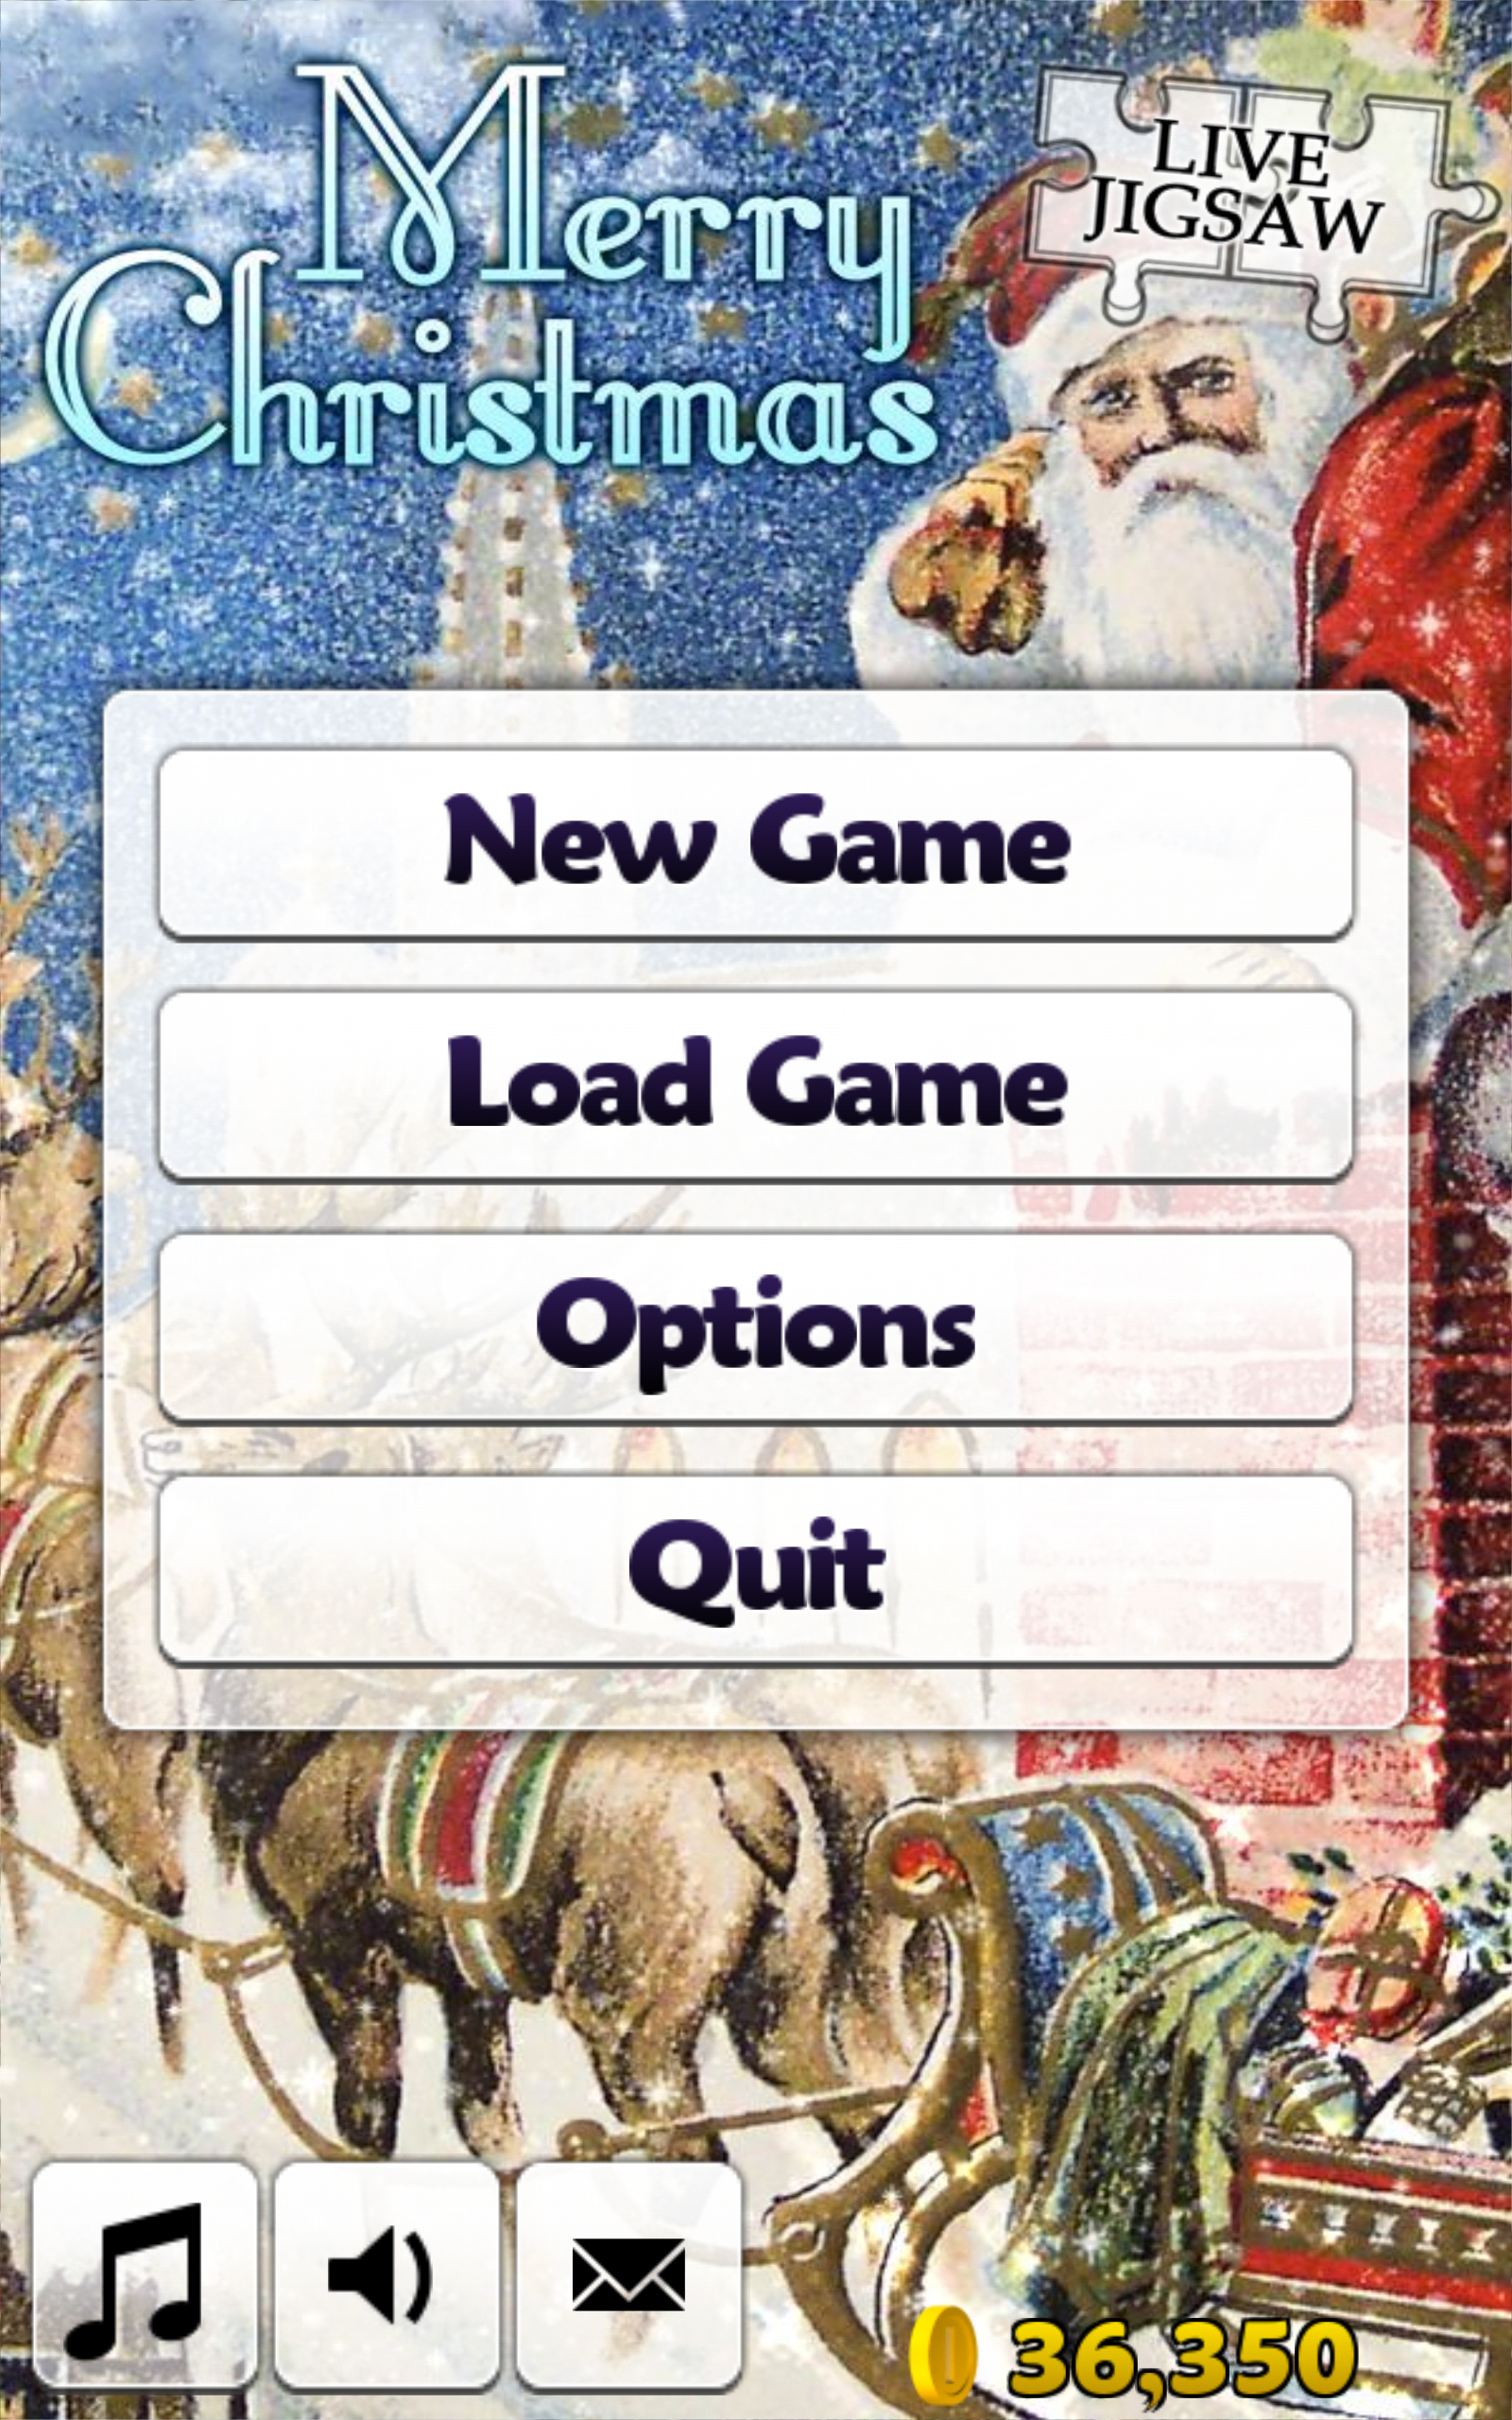 Android application Hidden Jigsaw: Merry Christmas screenshort